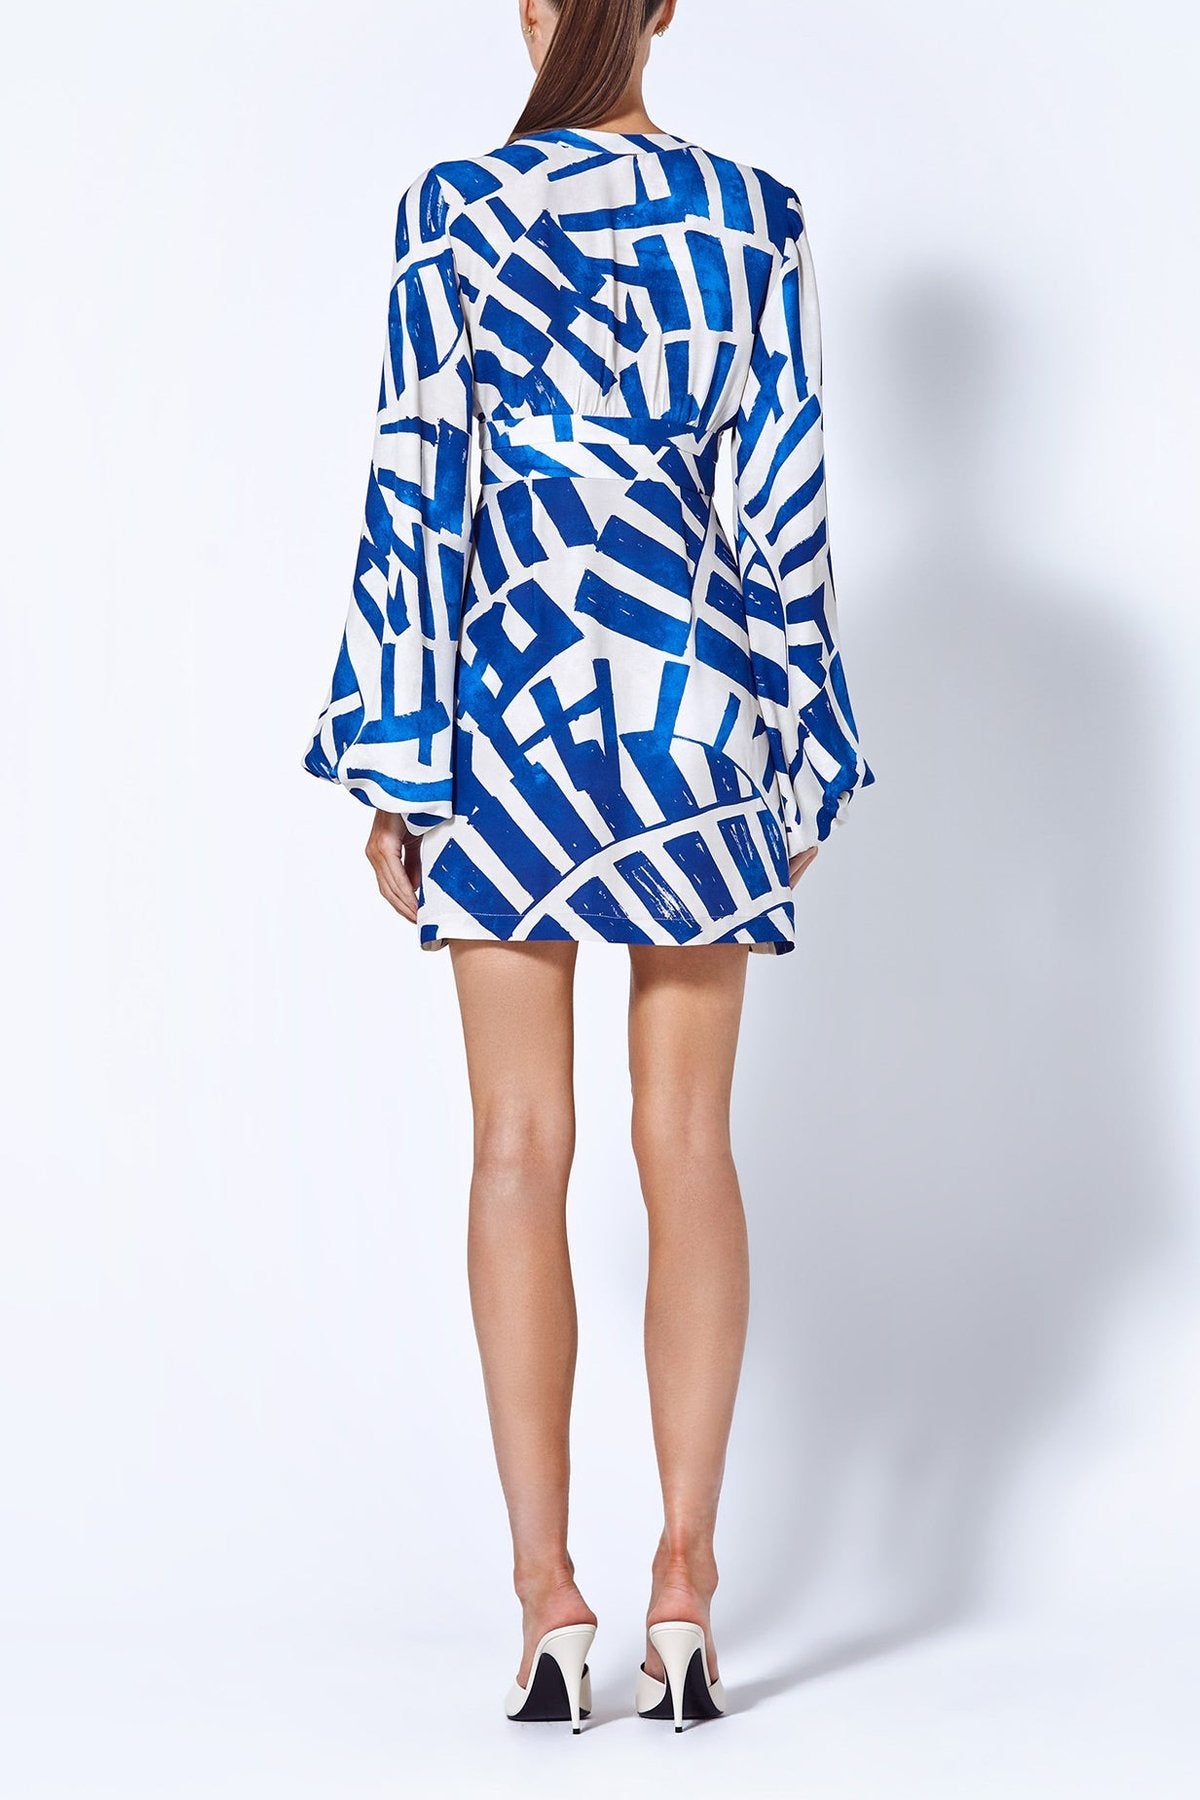 Spring Dress in Royal Blue - shop-olivia.com